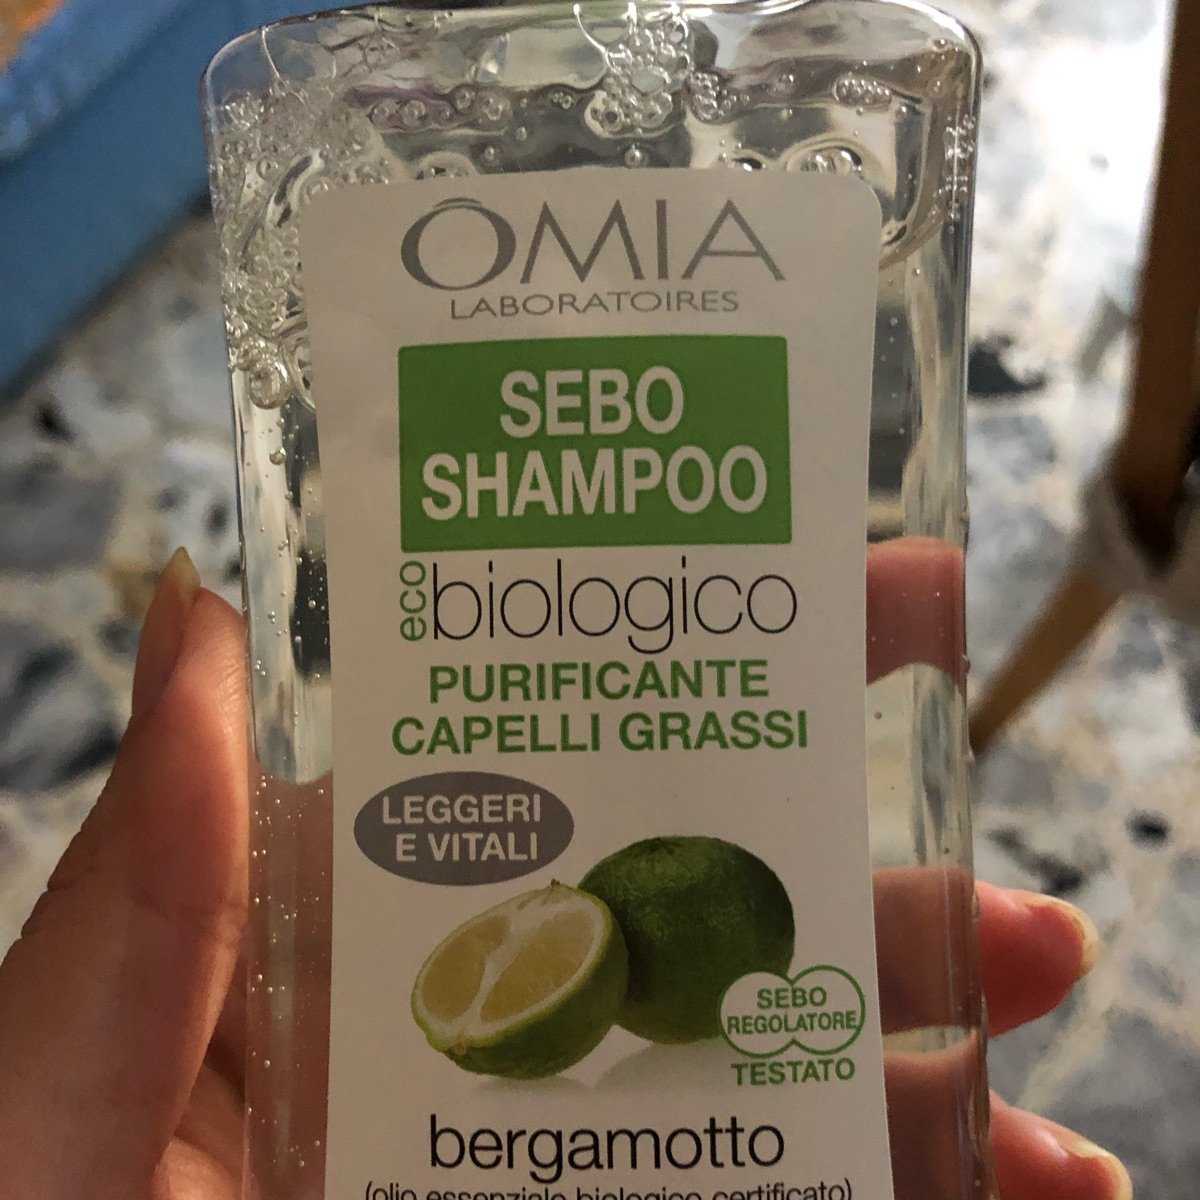 Omia Laboratoires Sebo Shampoo Purificante Capelli Grassi Reviews | abillion